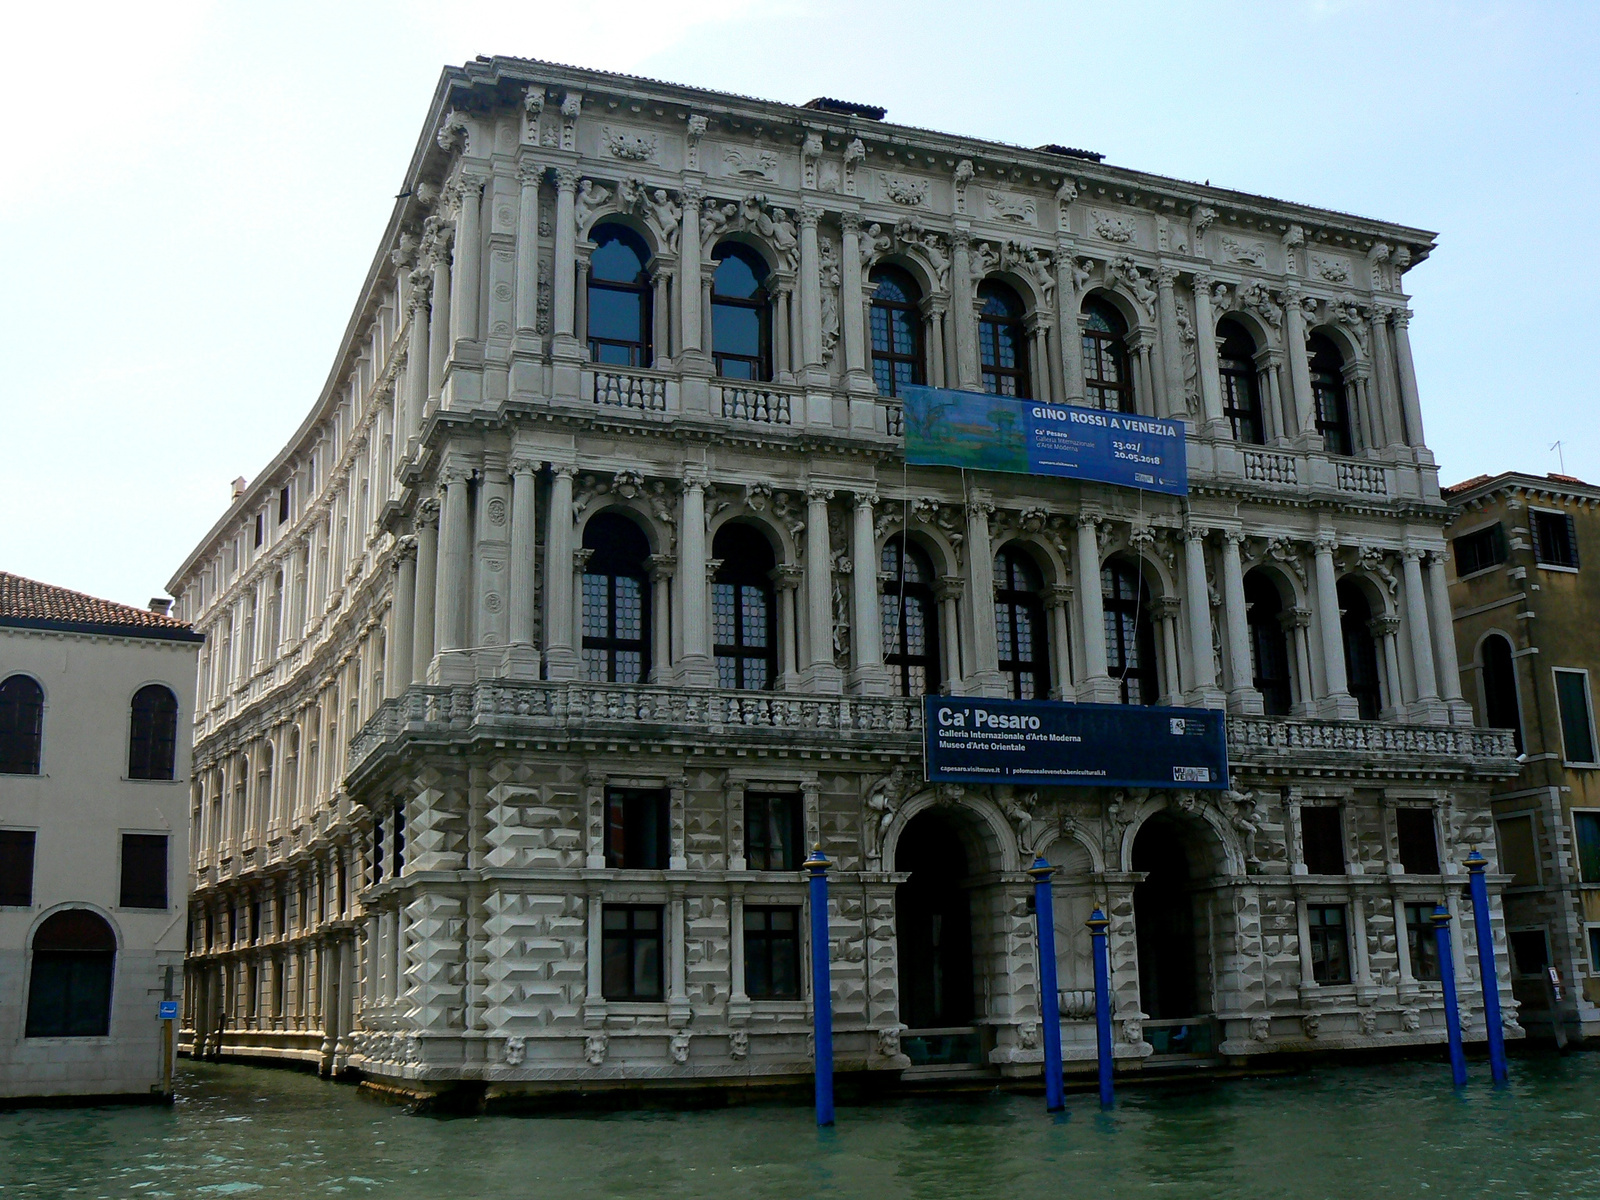 Ca' Pesaro Galleria